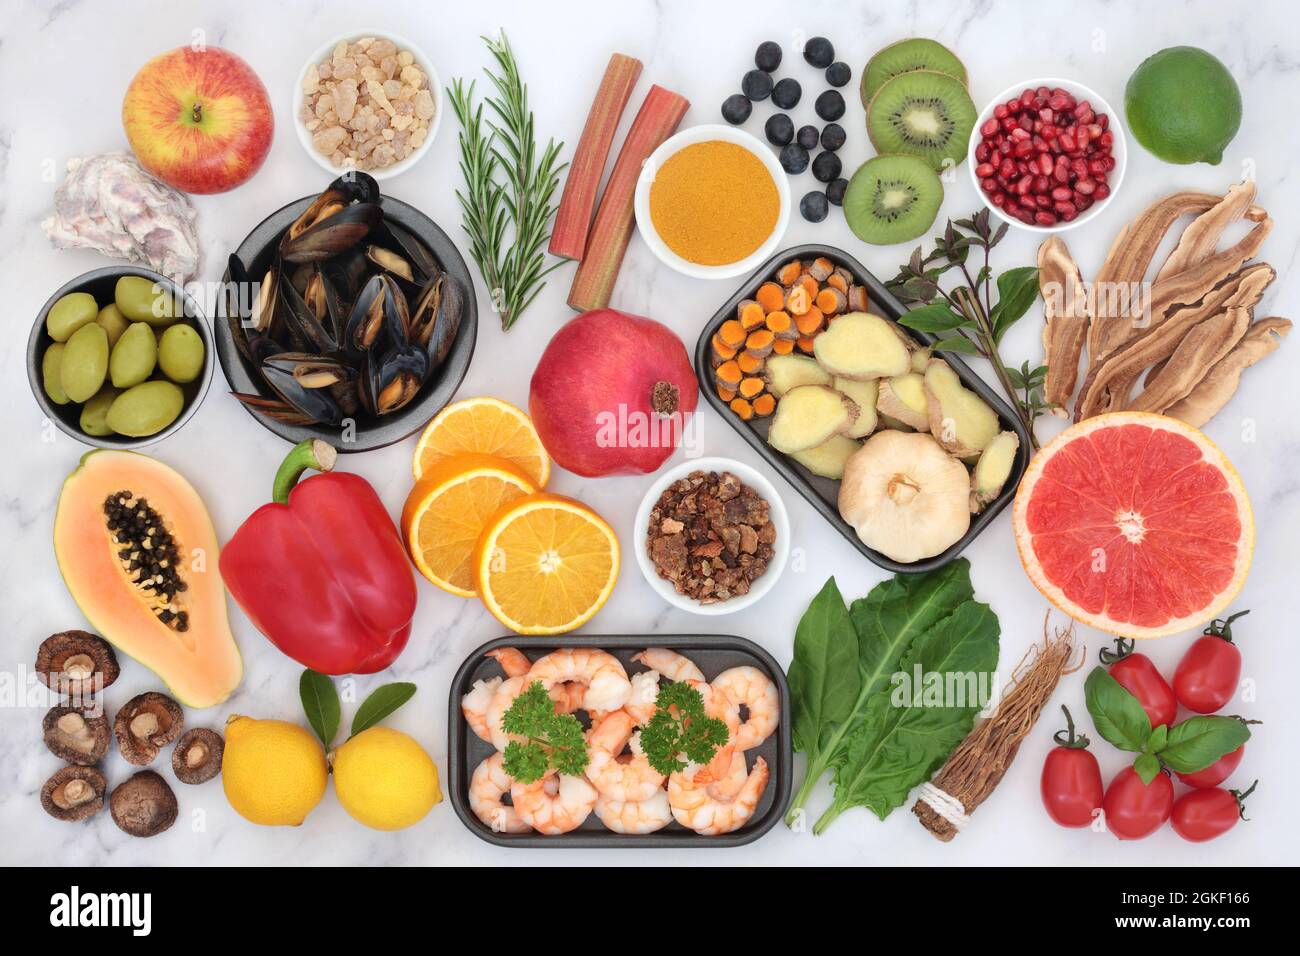 Cibo sano per il supporto del sistema immunitario con frutti di mare, verdure, frutta, erbe, spezie. Alimenti per la salute molto alti in antiossidanti, antocianine, proteine. Foto Stock